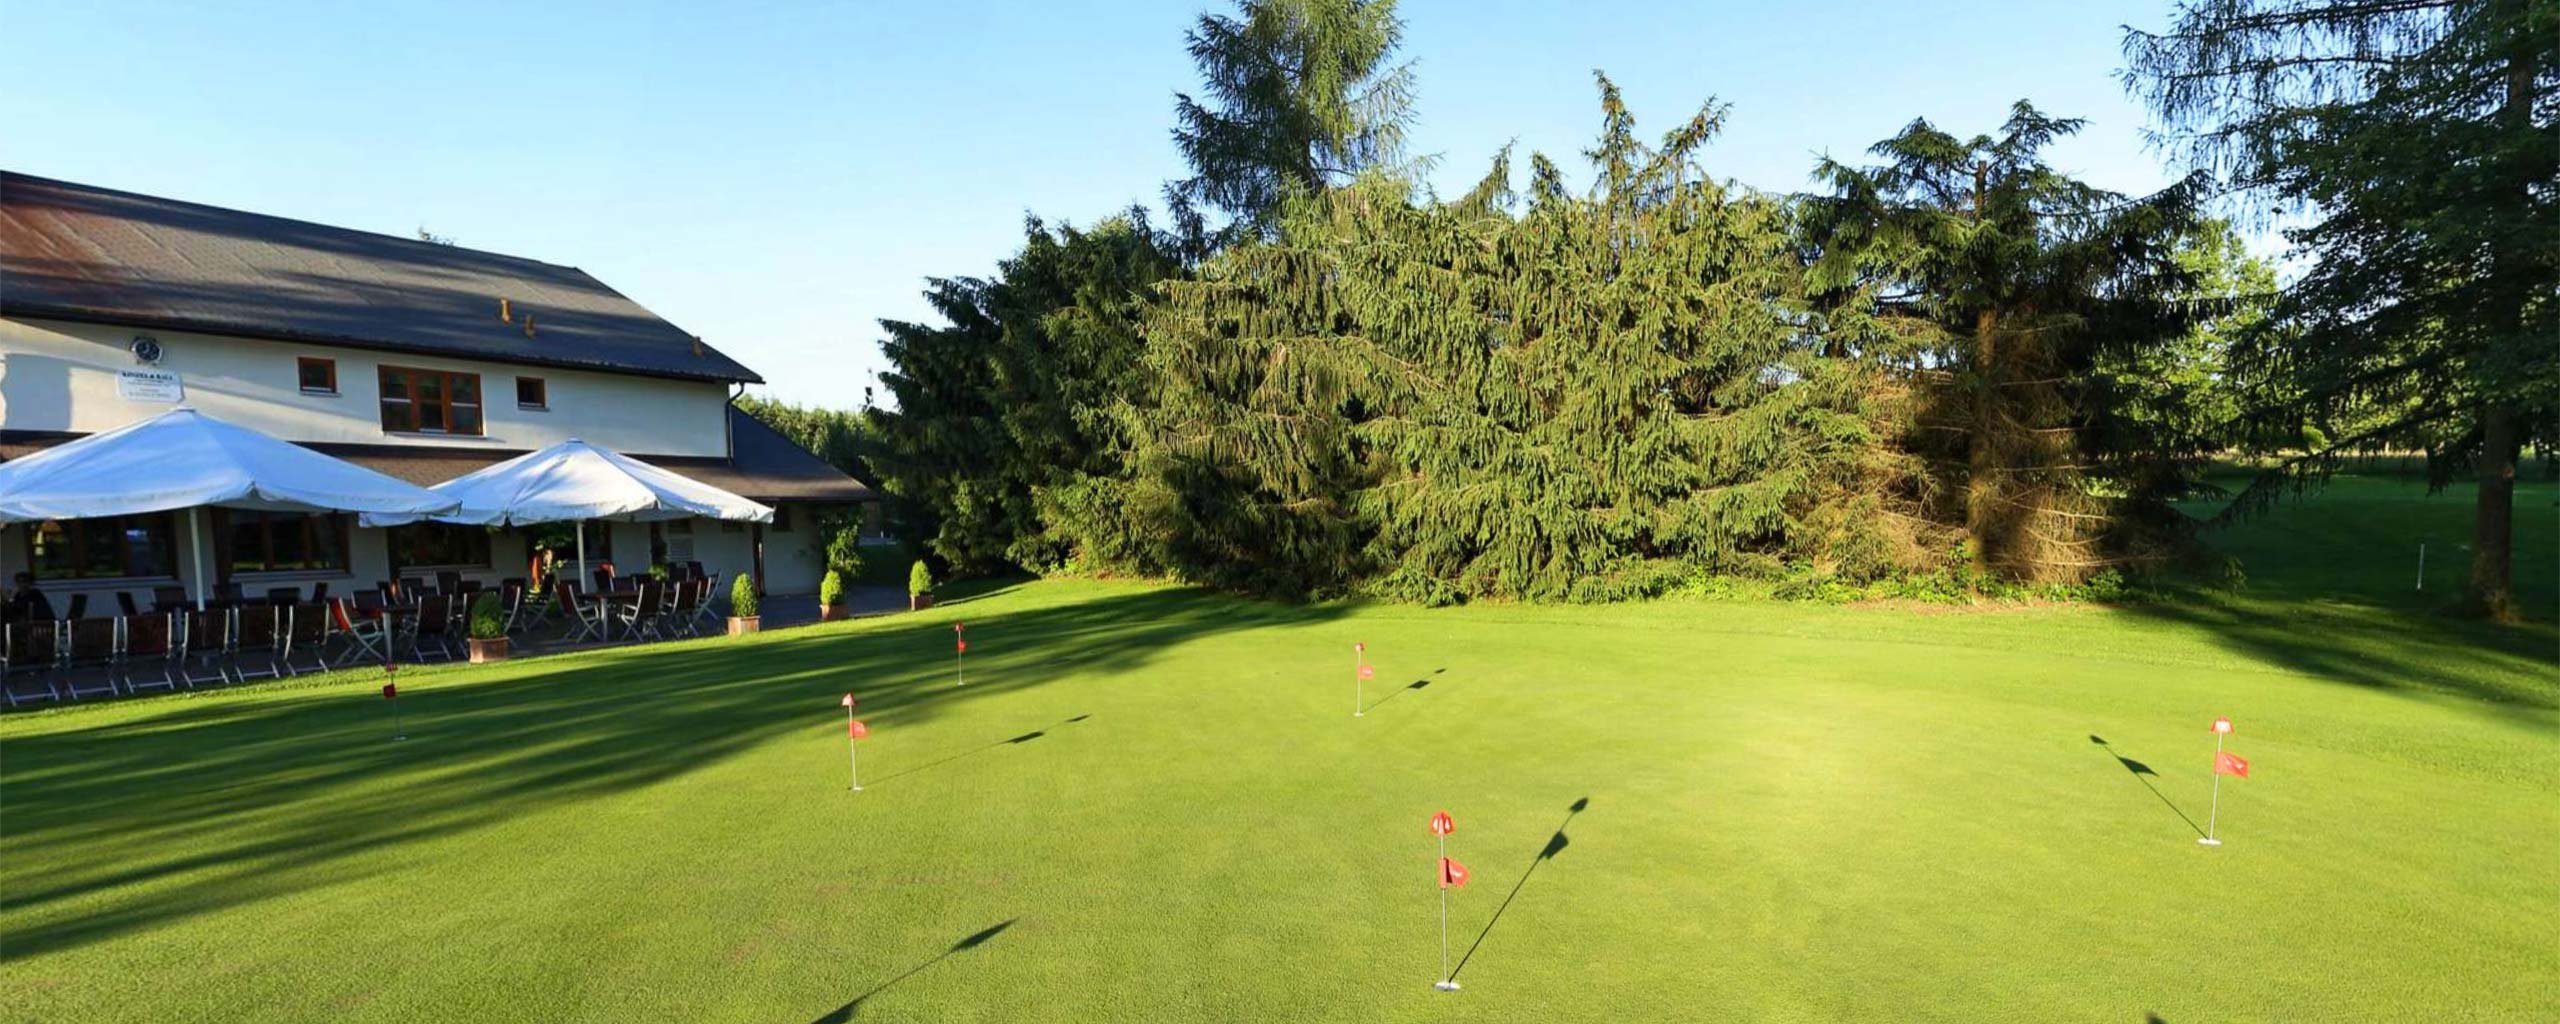 Das Putting-Green des Allgäuer Golf- und Landclub e.V. mit seitlichem Blick auf das Golfclub-Restaurant des  als Vorschau der 360°-Ansicht des Putting-Greens